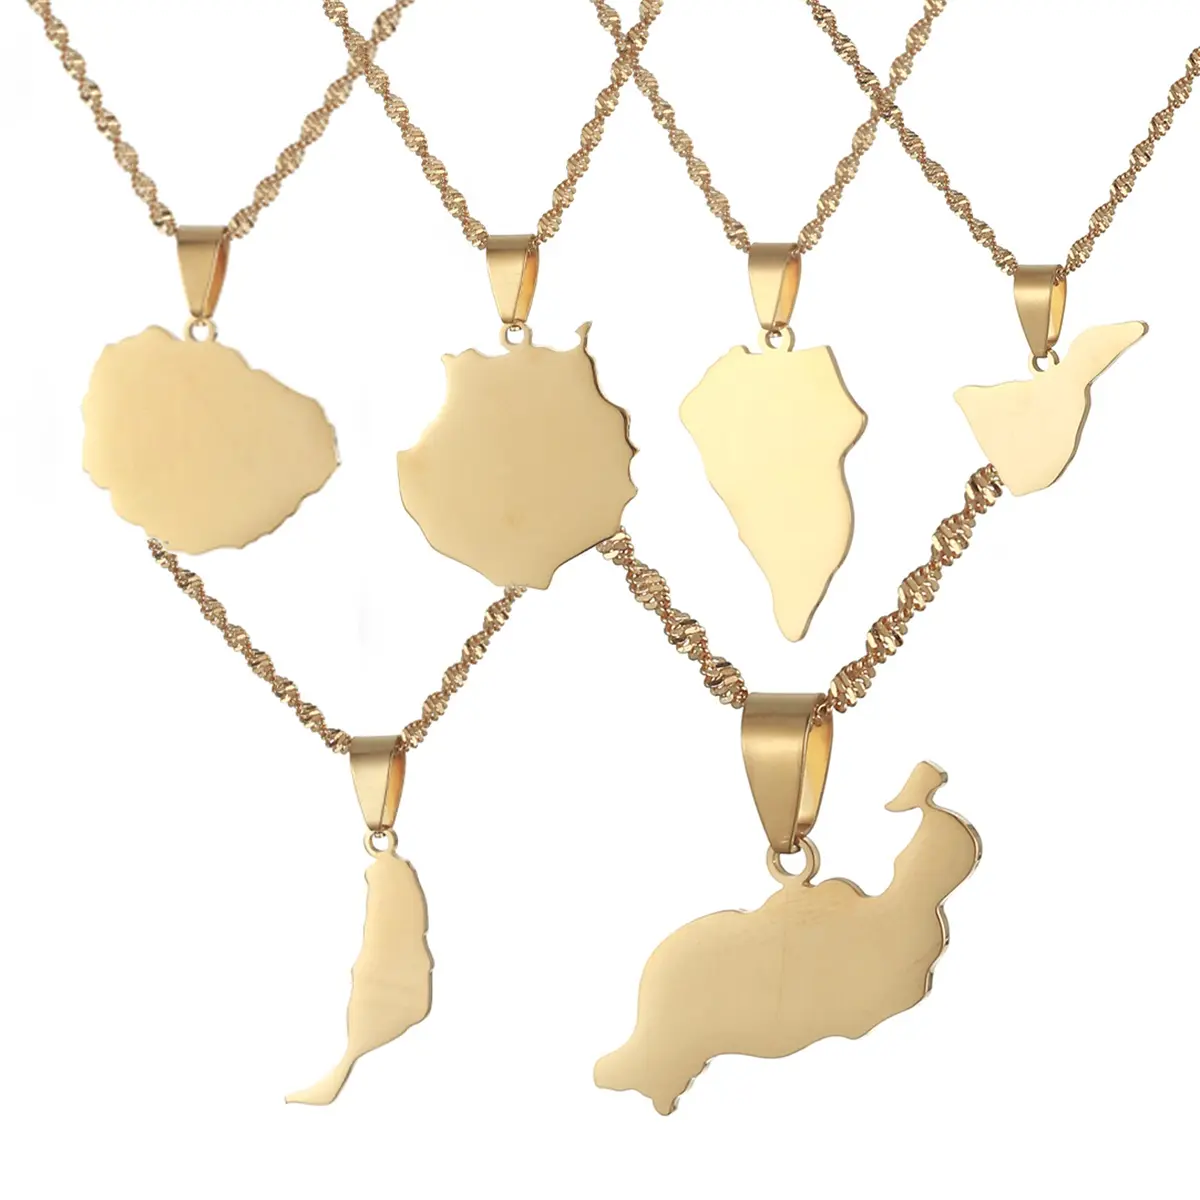 Ожерелье с подвеской в виде карты Испании, Канарских островов, Тенерифе, Гран-Канарии, Fuerteventura, La Palam, Lanzarote, женские и мужские украшения